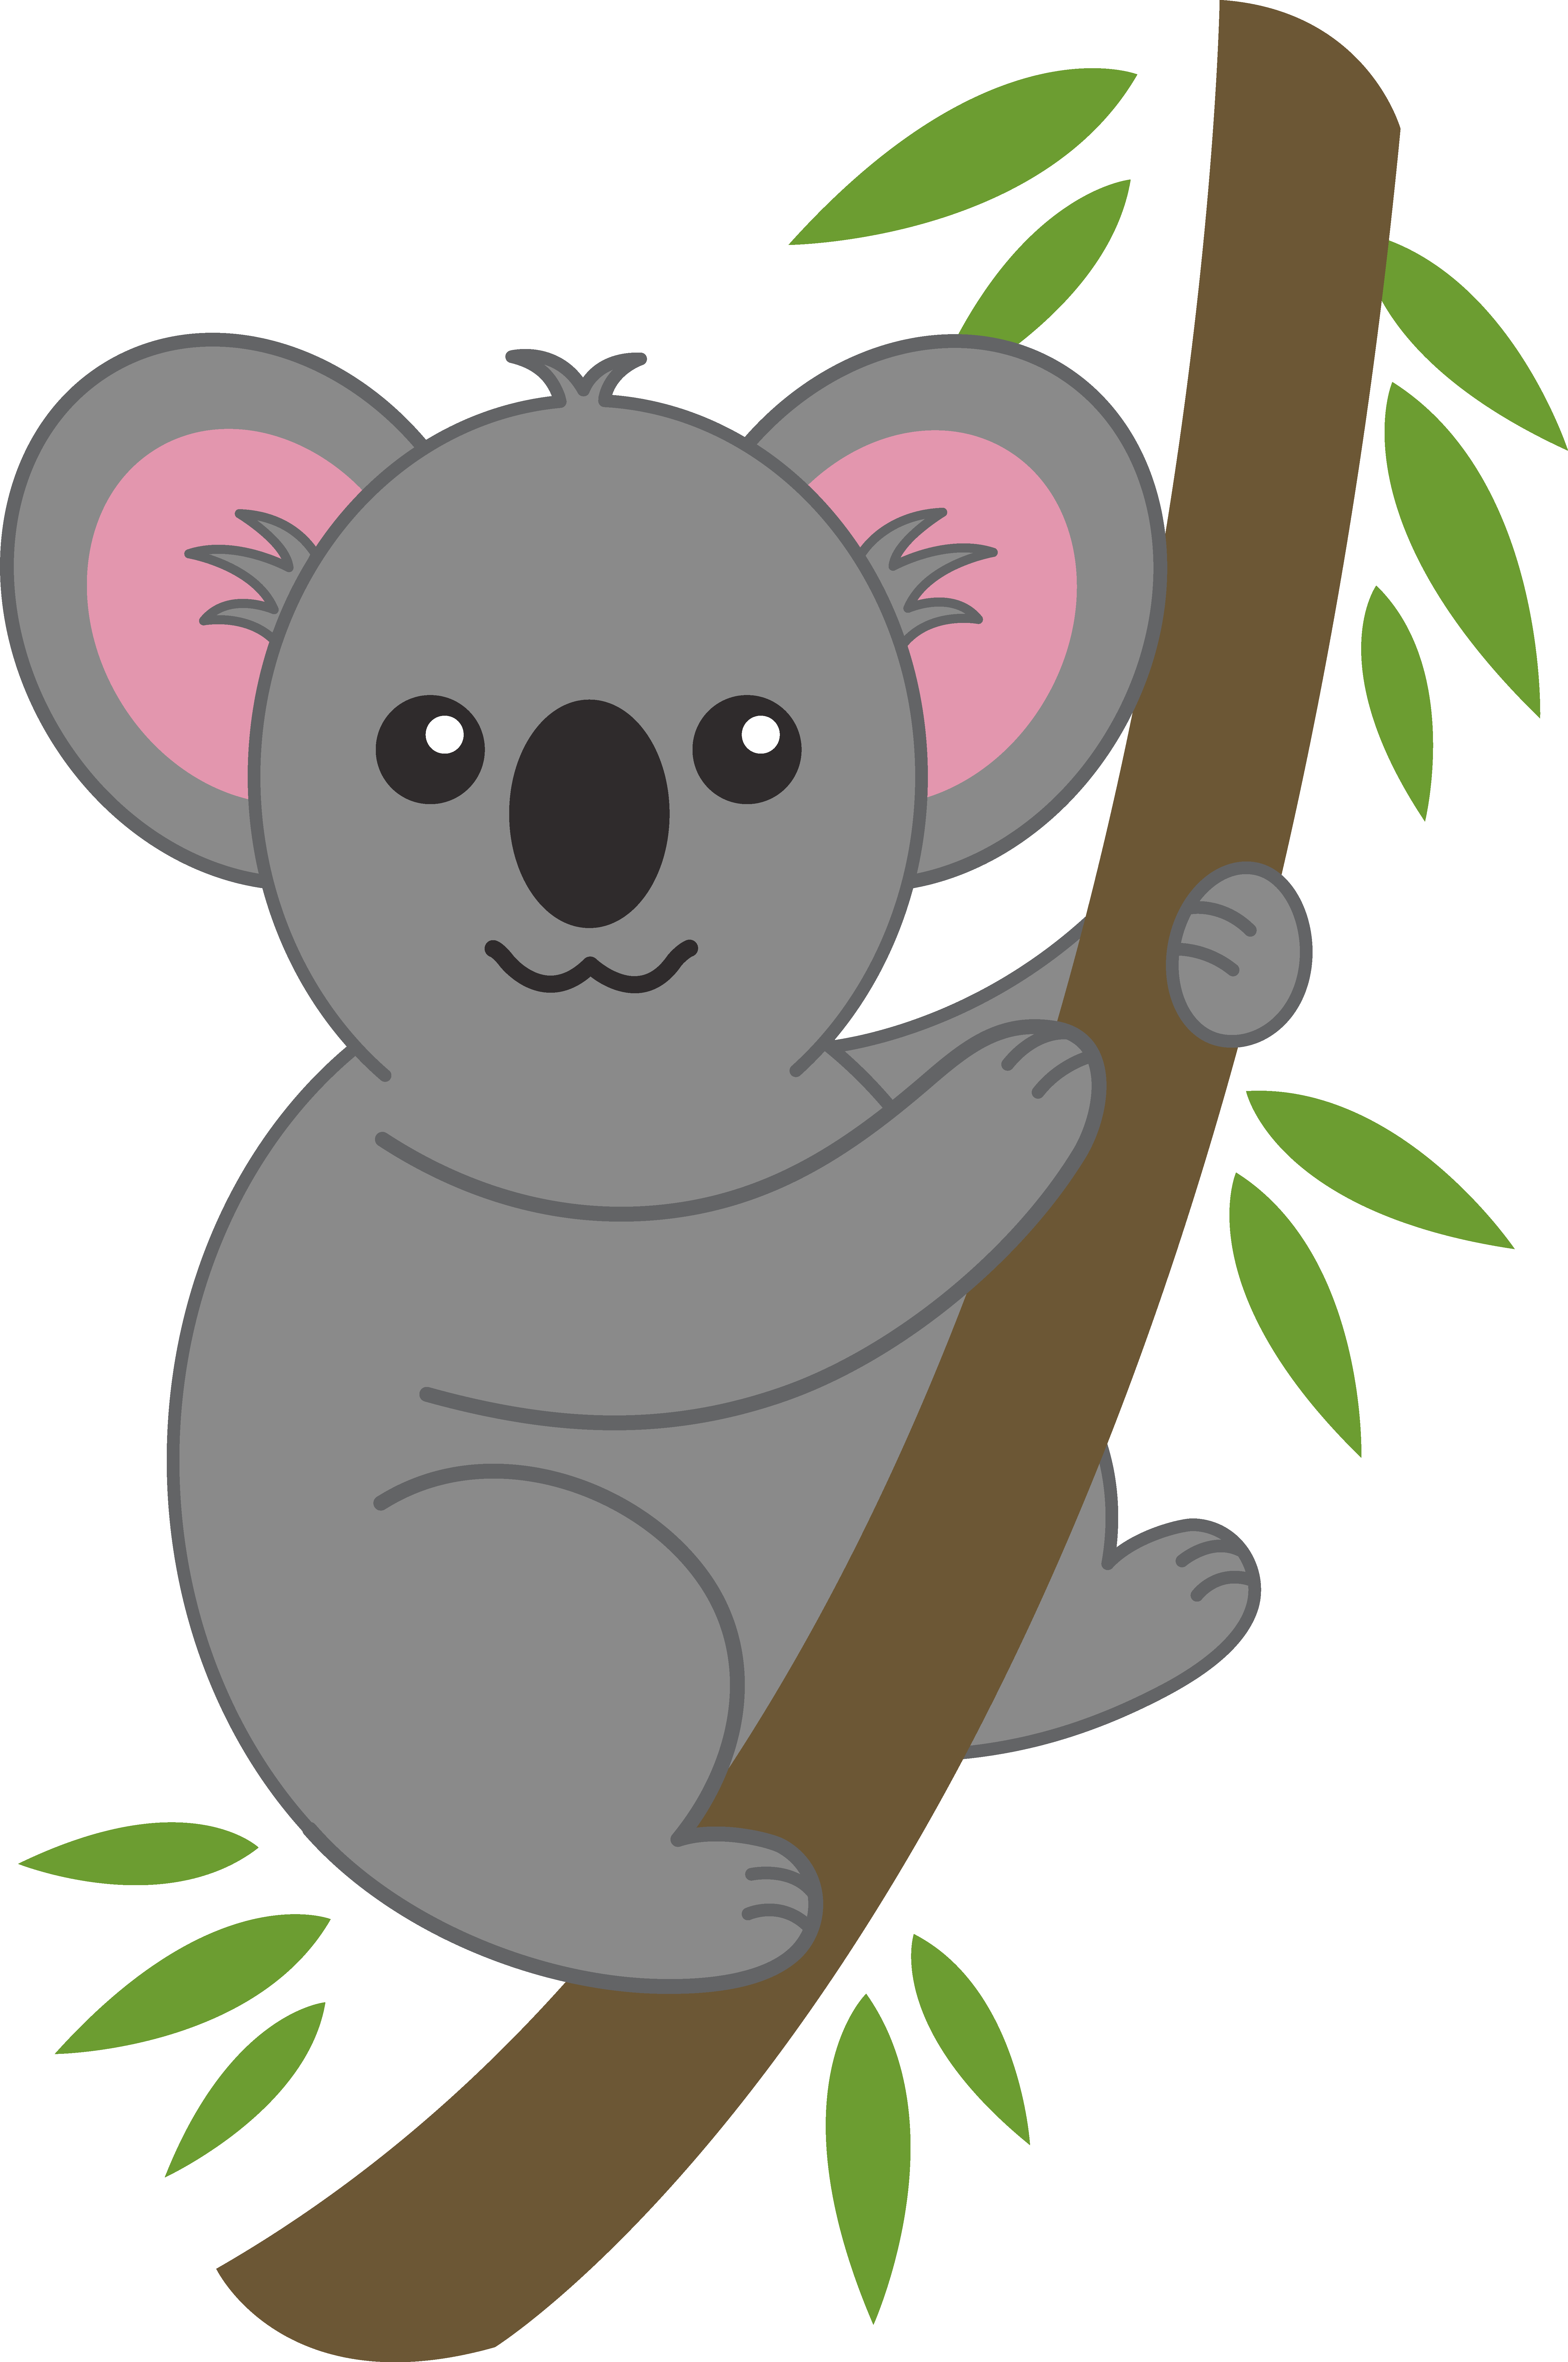 koala bear clip art | Cute Koala on Tree Branch - Free Clip Art ..